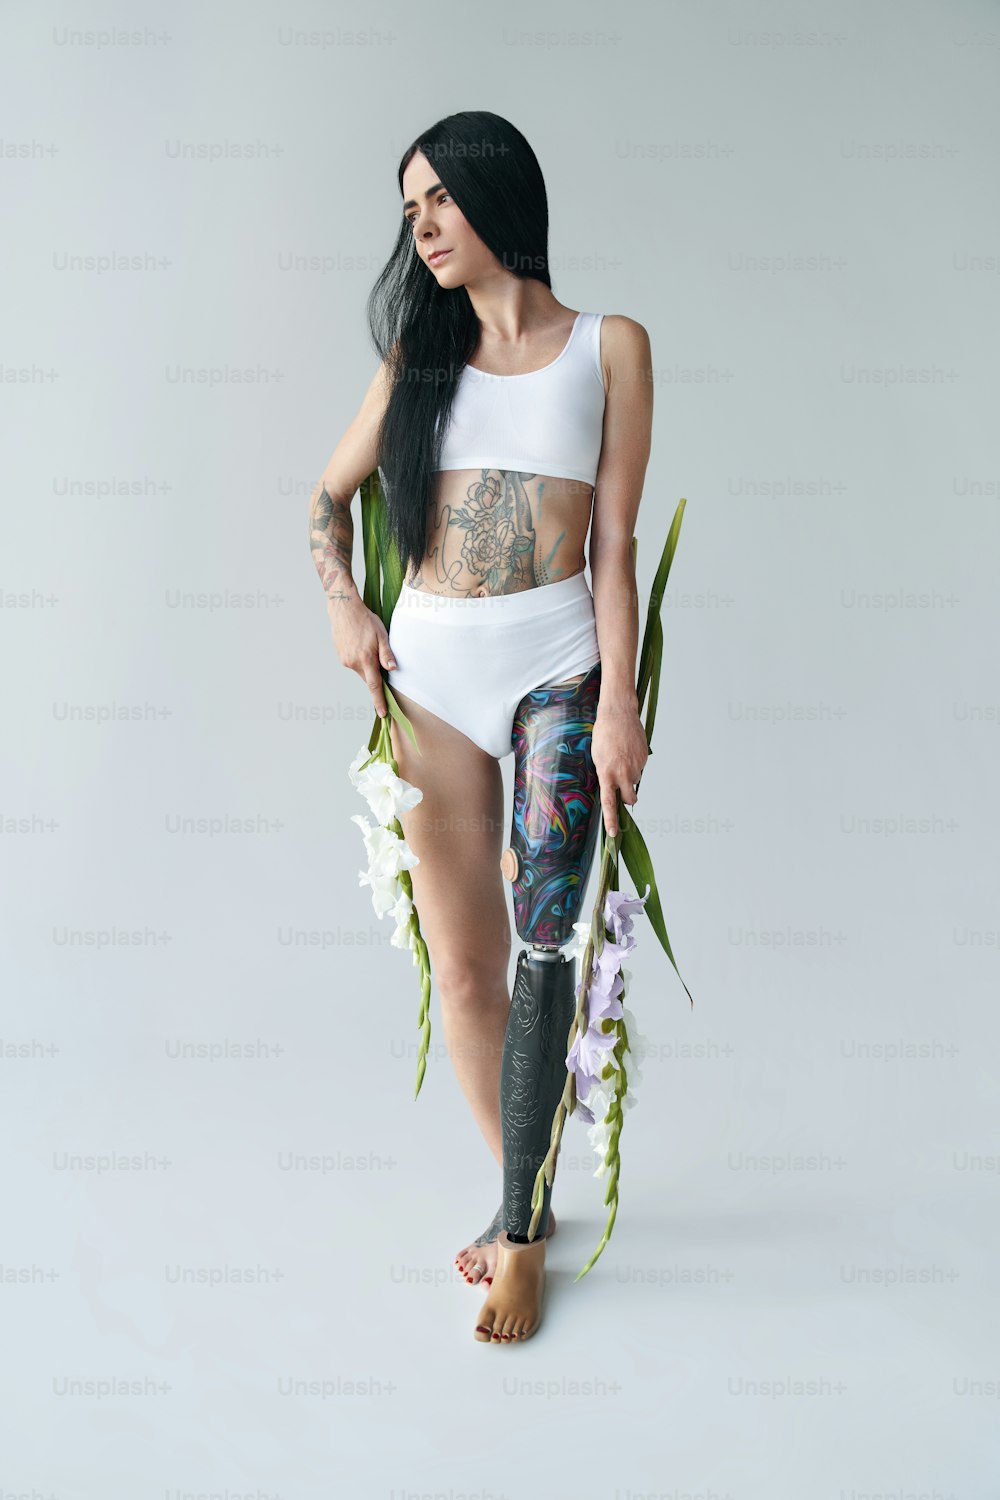 Vista vertical de una joven morena con una pierna artificial sosteniendo un ramo de flores en sus manos y posando ante la cámara. Concepto de personas con necesidades especiales